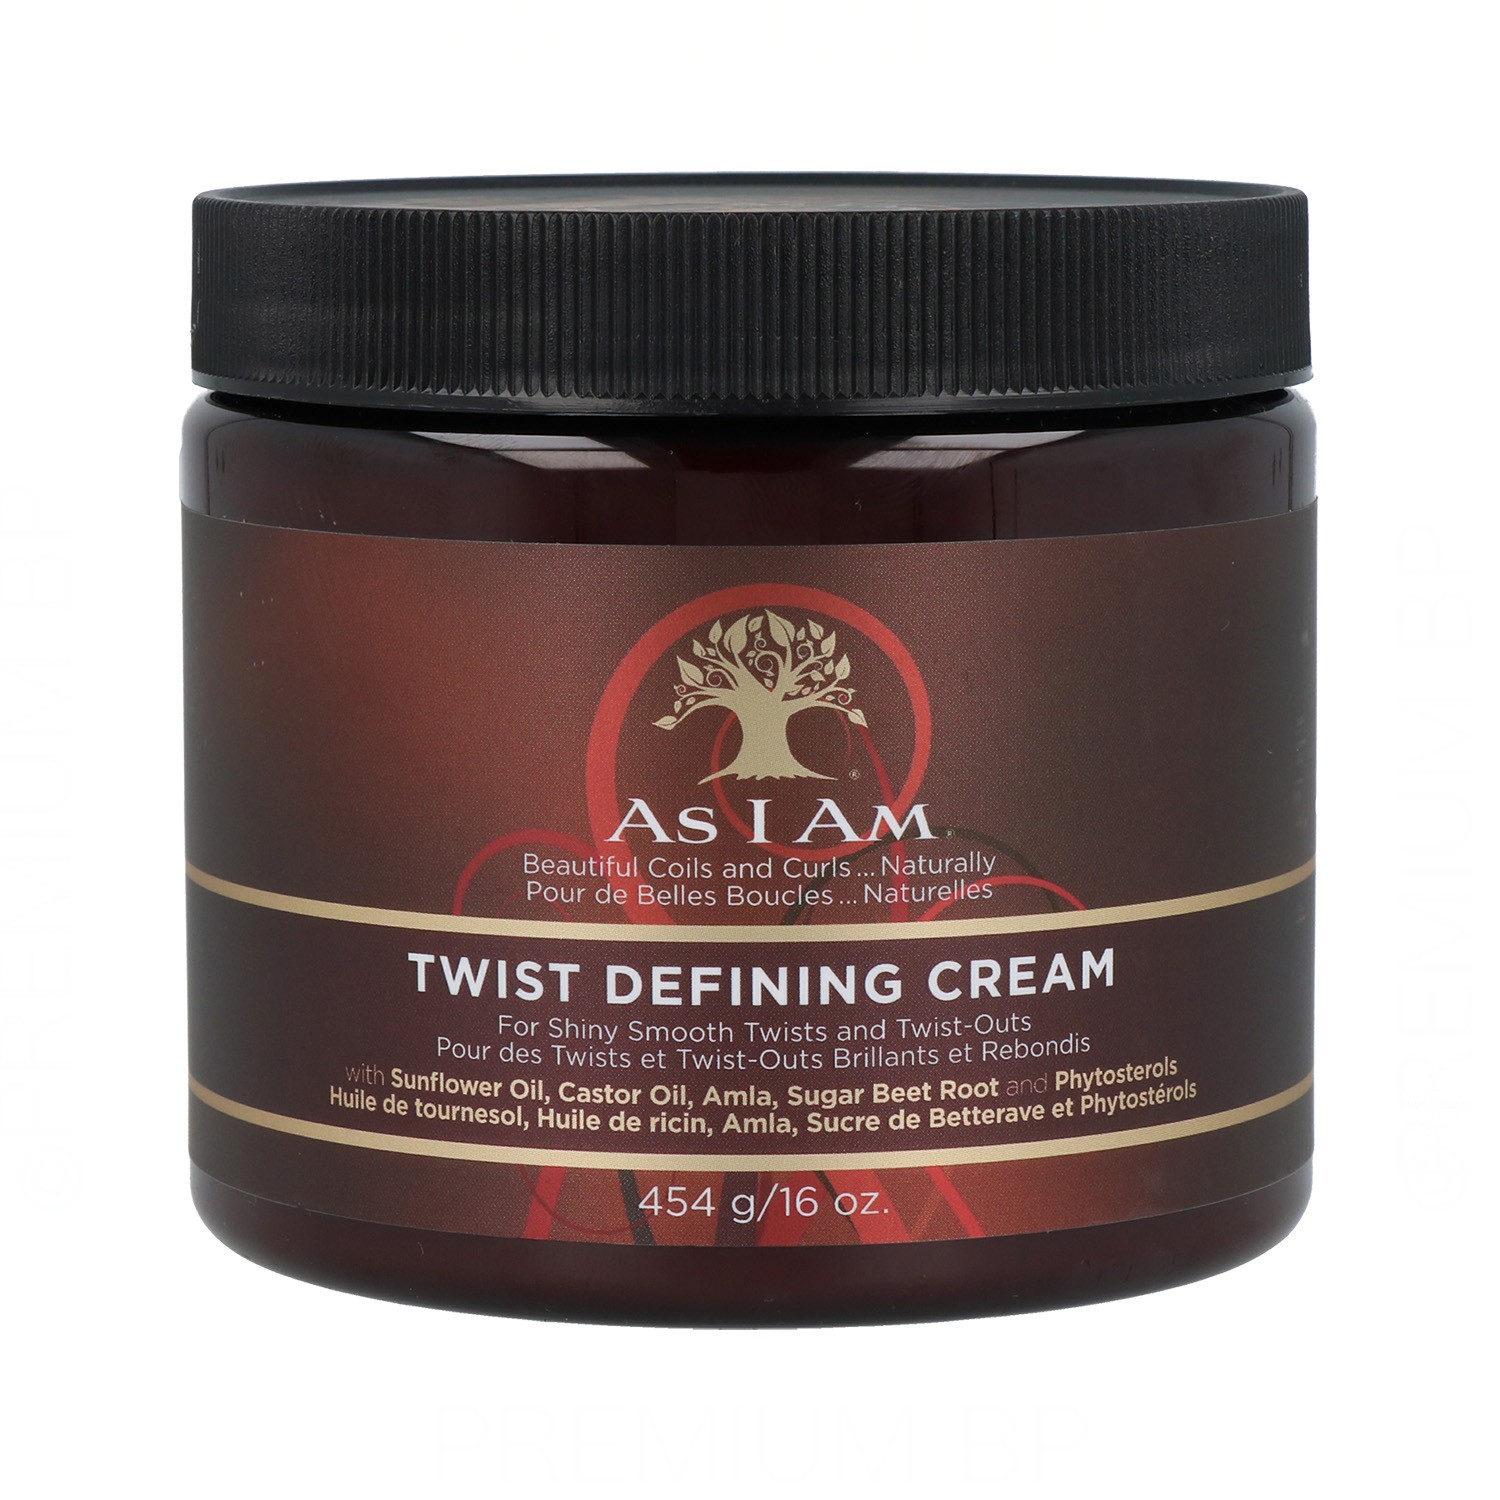 As I Am - As i am twist defining crema definidora 454g/16oz, producto vegano. ideal para cabellos tipo 3 (rizado) y tipo 4 (muy rizado/afro).